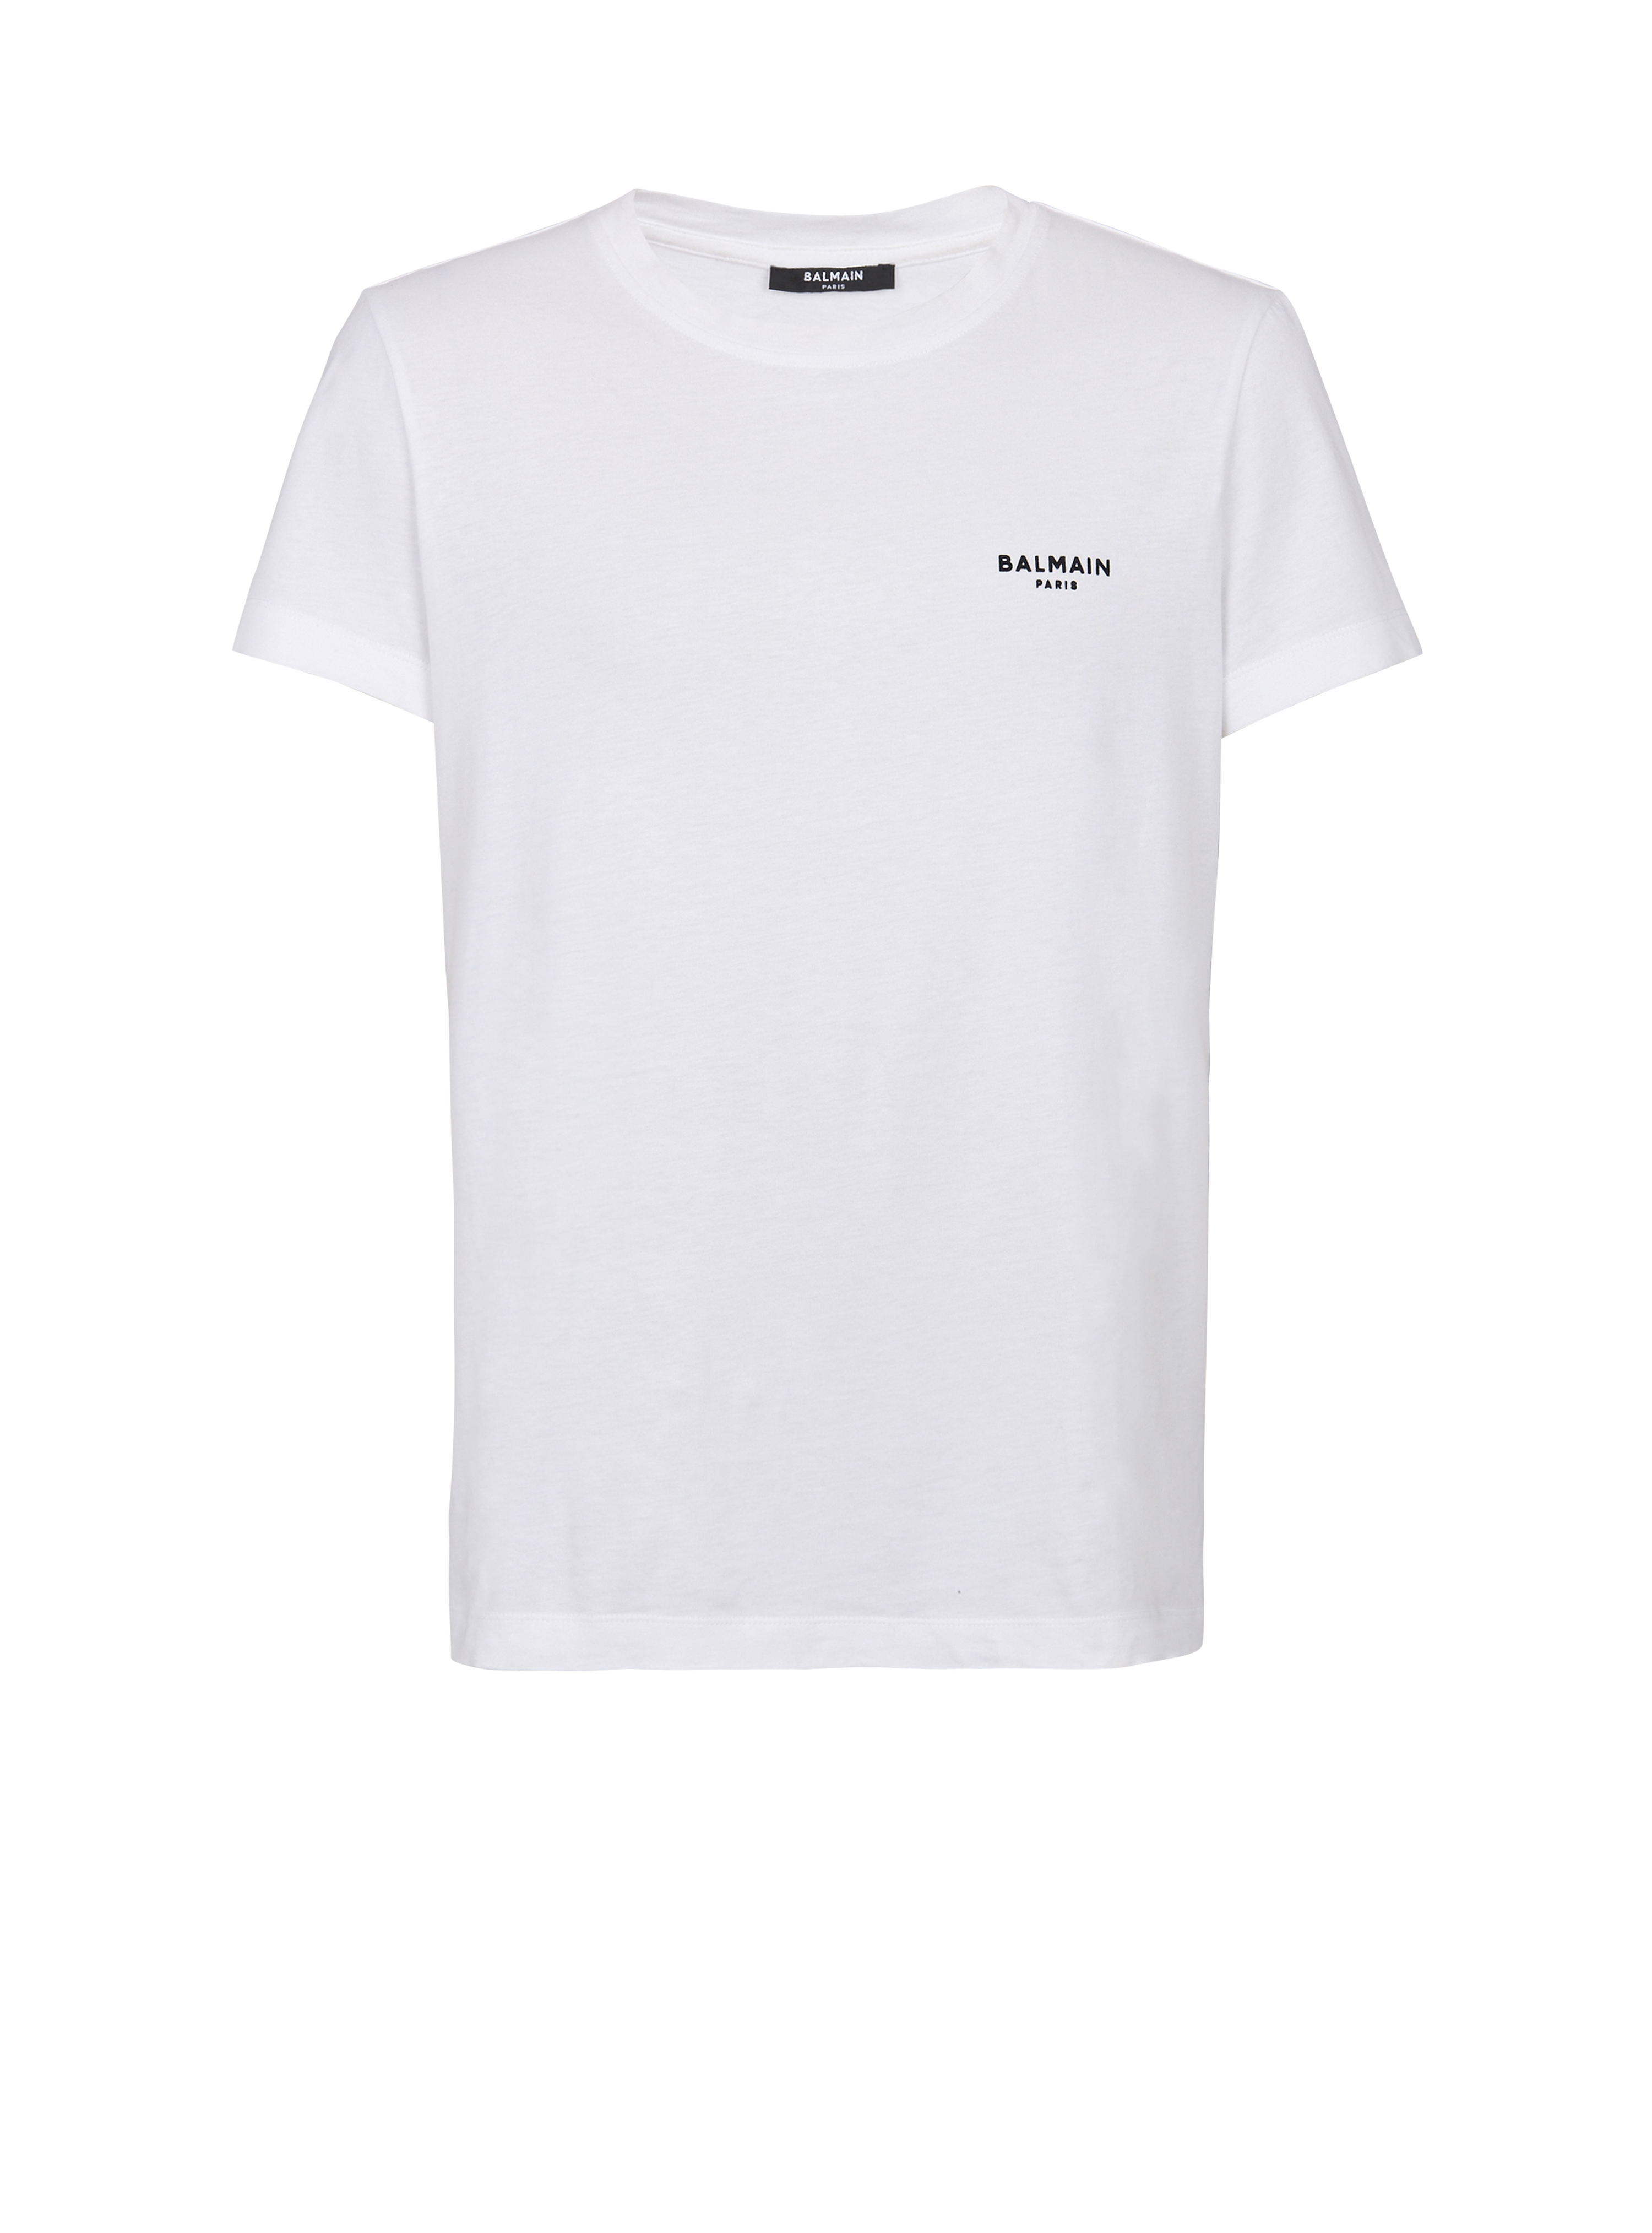 T-shirt in cotone eco-design con piccolo logo Balmain floccato, bianco